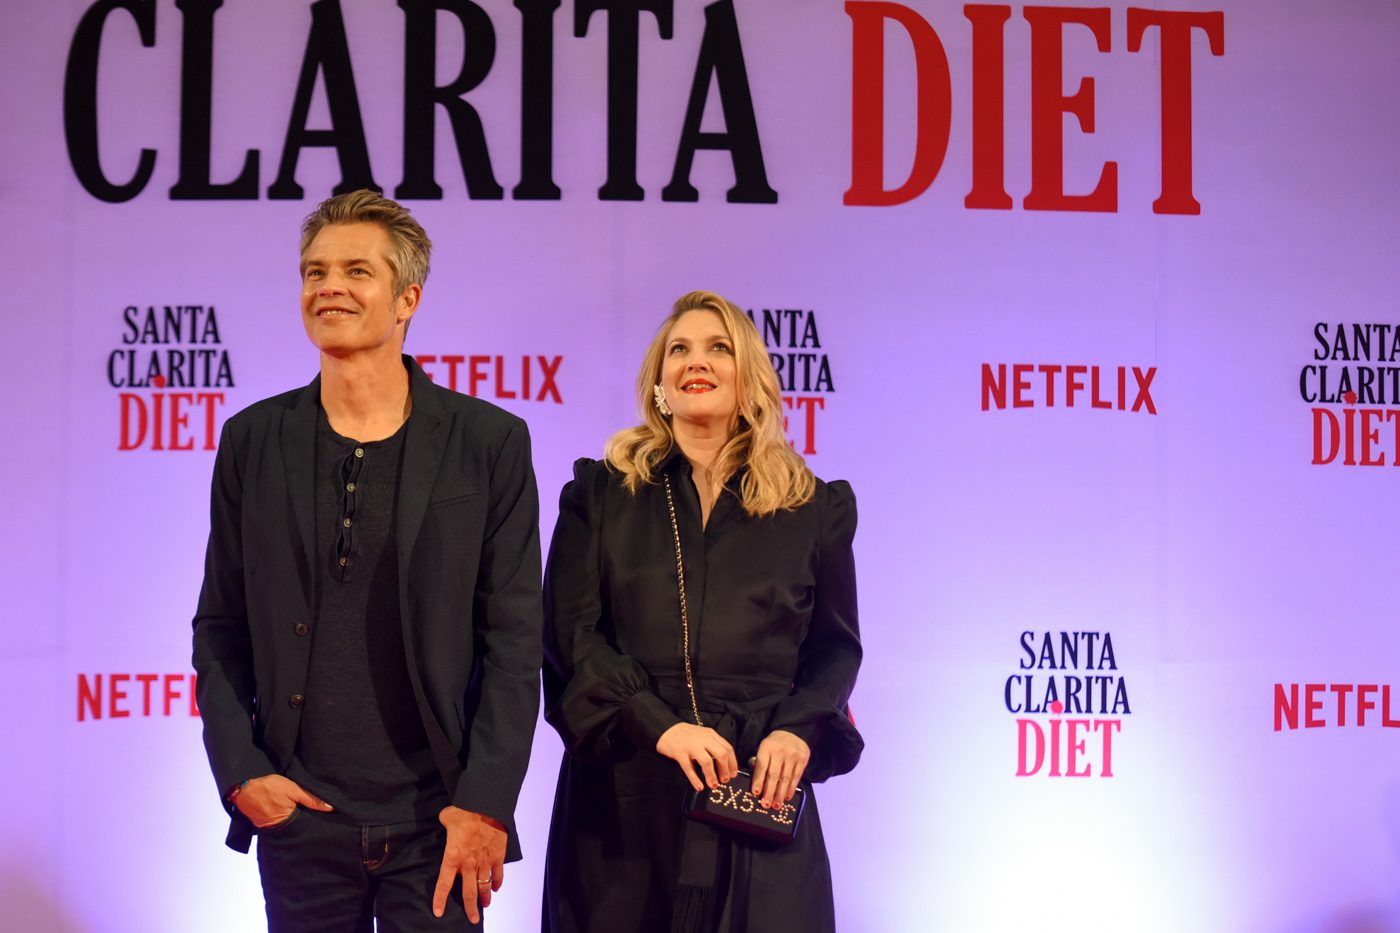 Netflix cancels ‘Santa Clarita Diet’